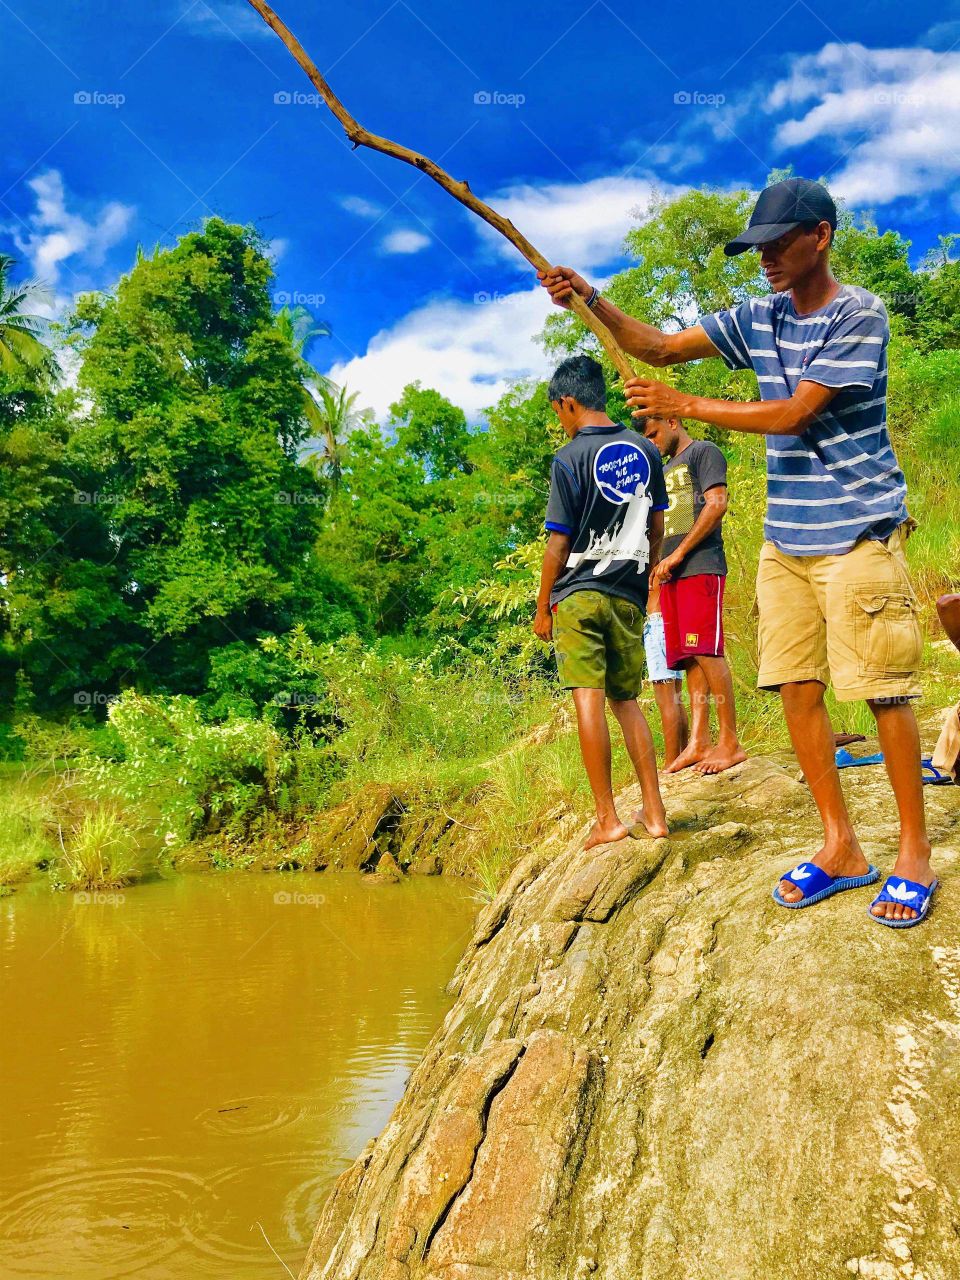 Fishing some Boys